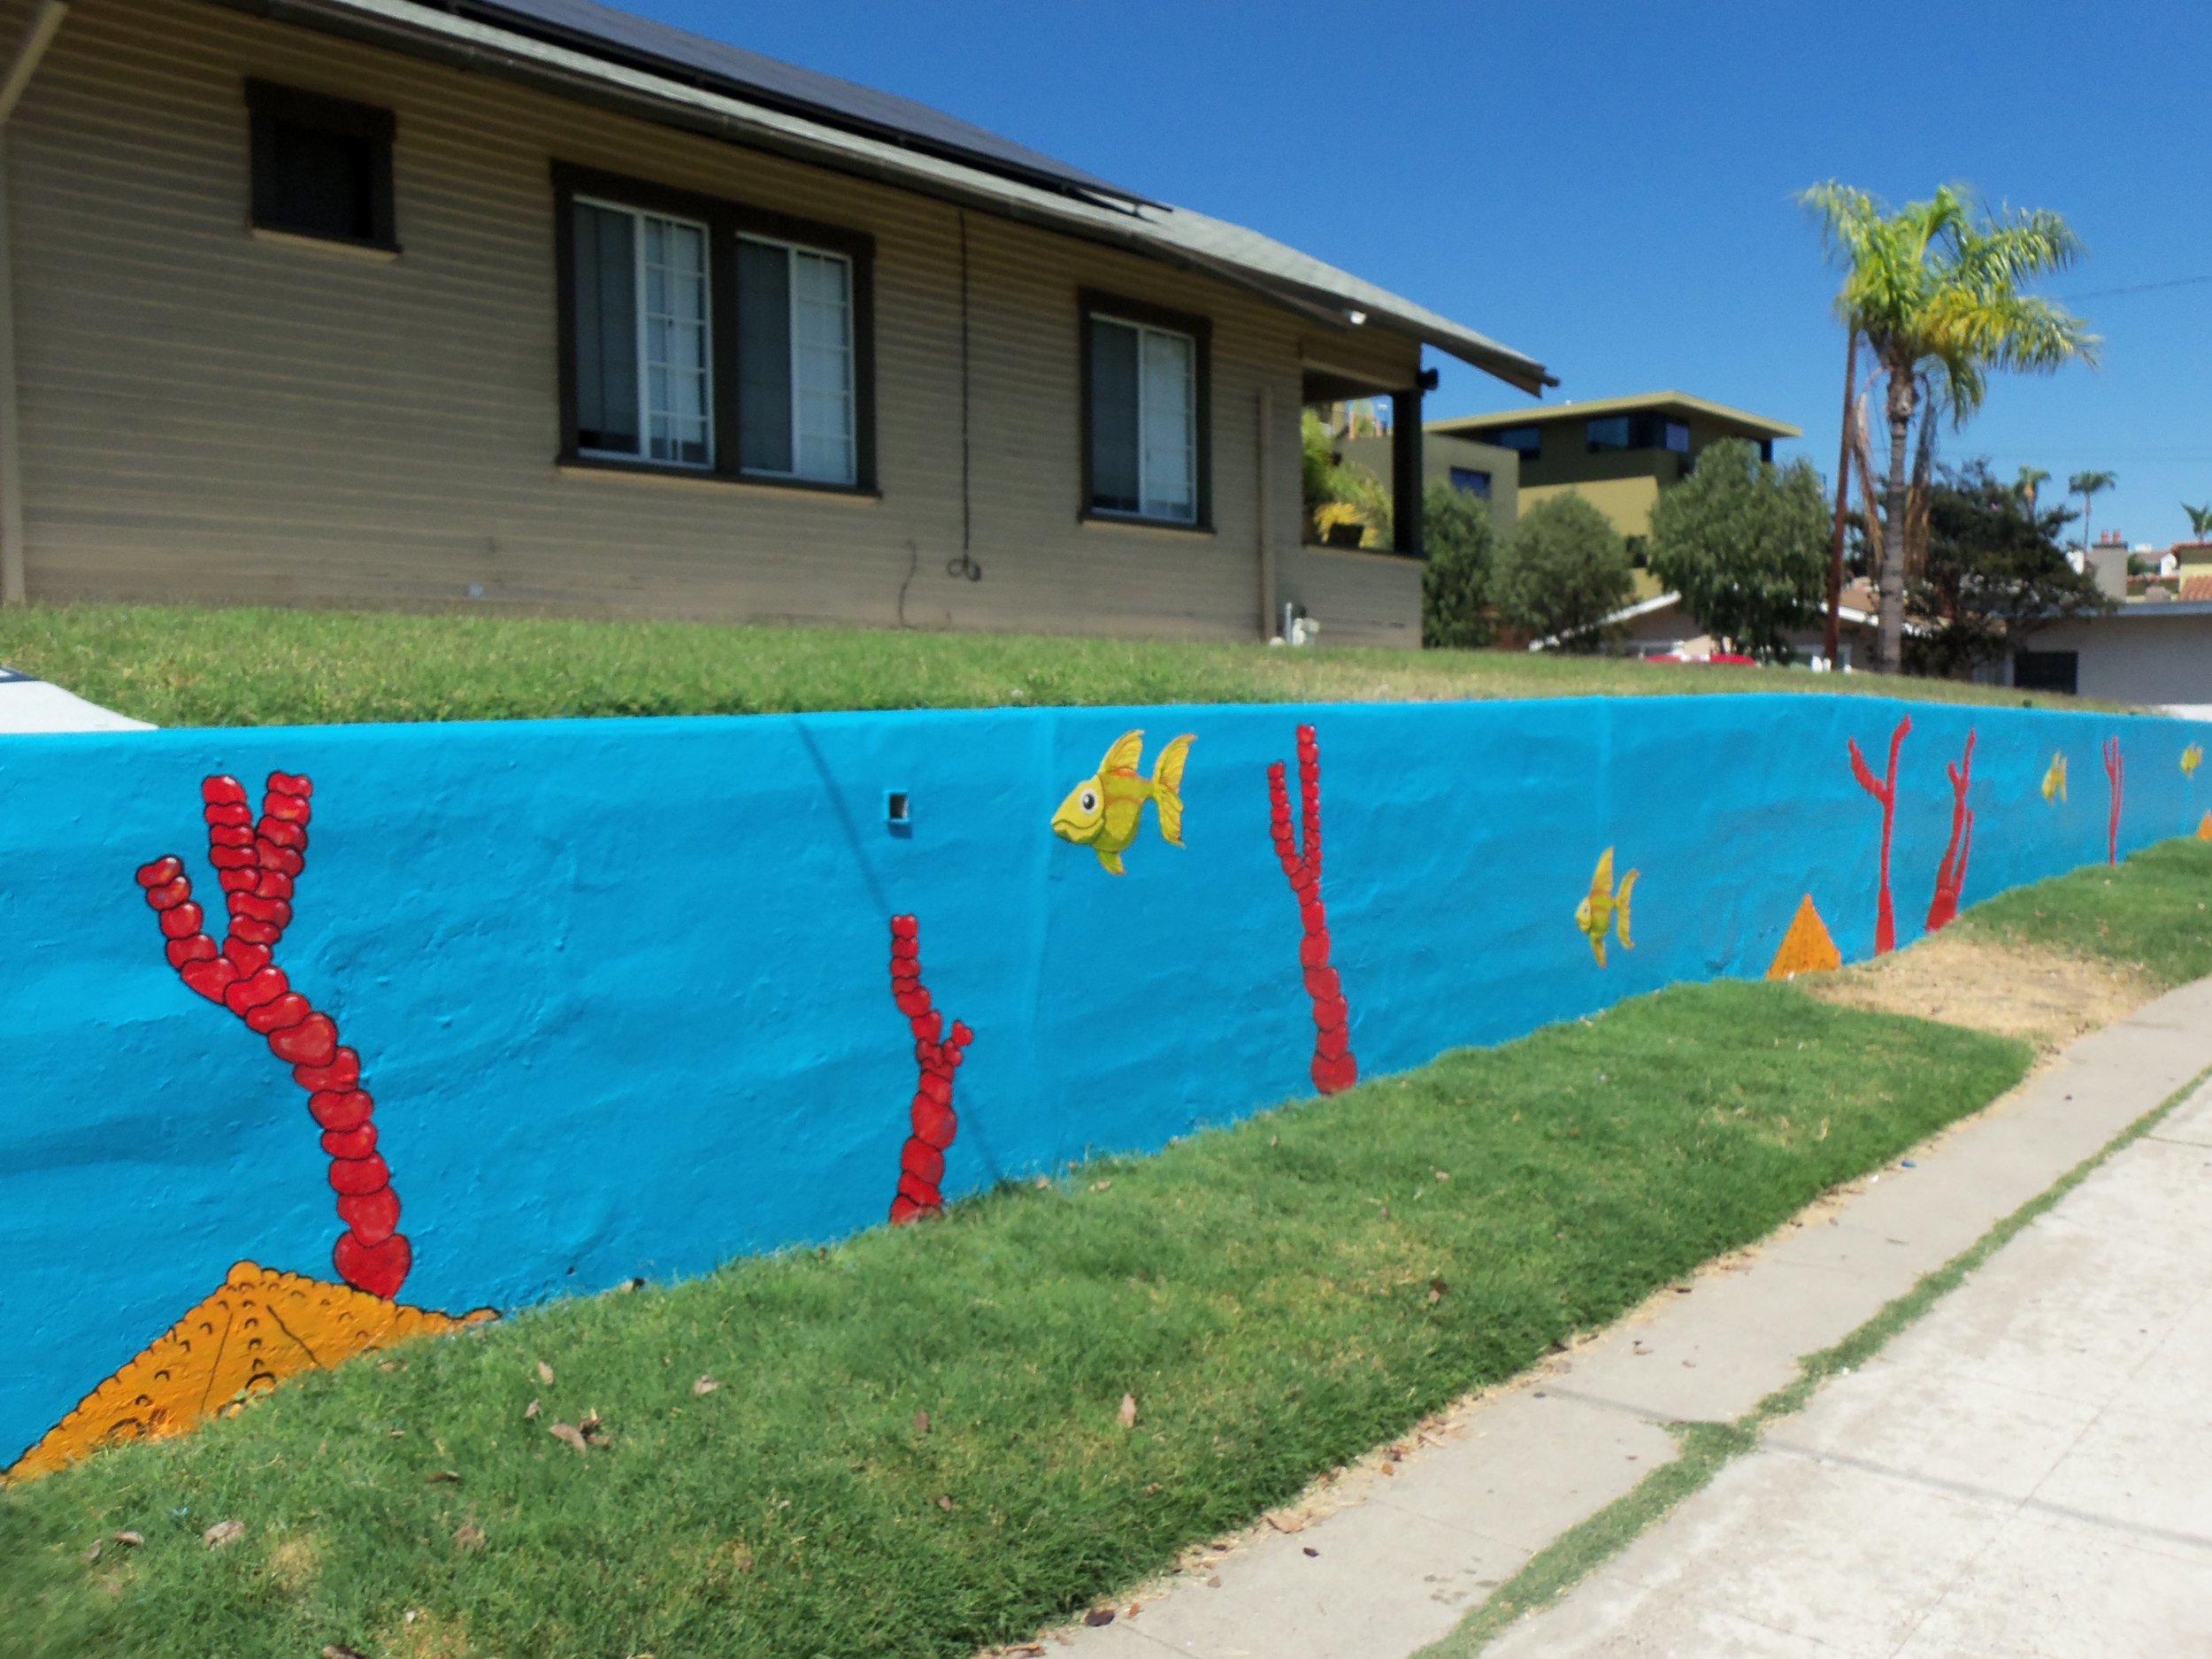 San-Diego-mural-gonza-fish-2015-julio-gonzalez-7.JPG